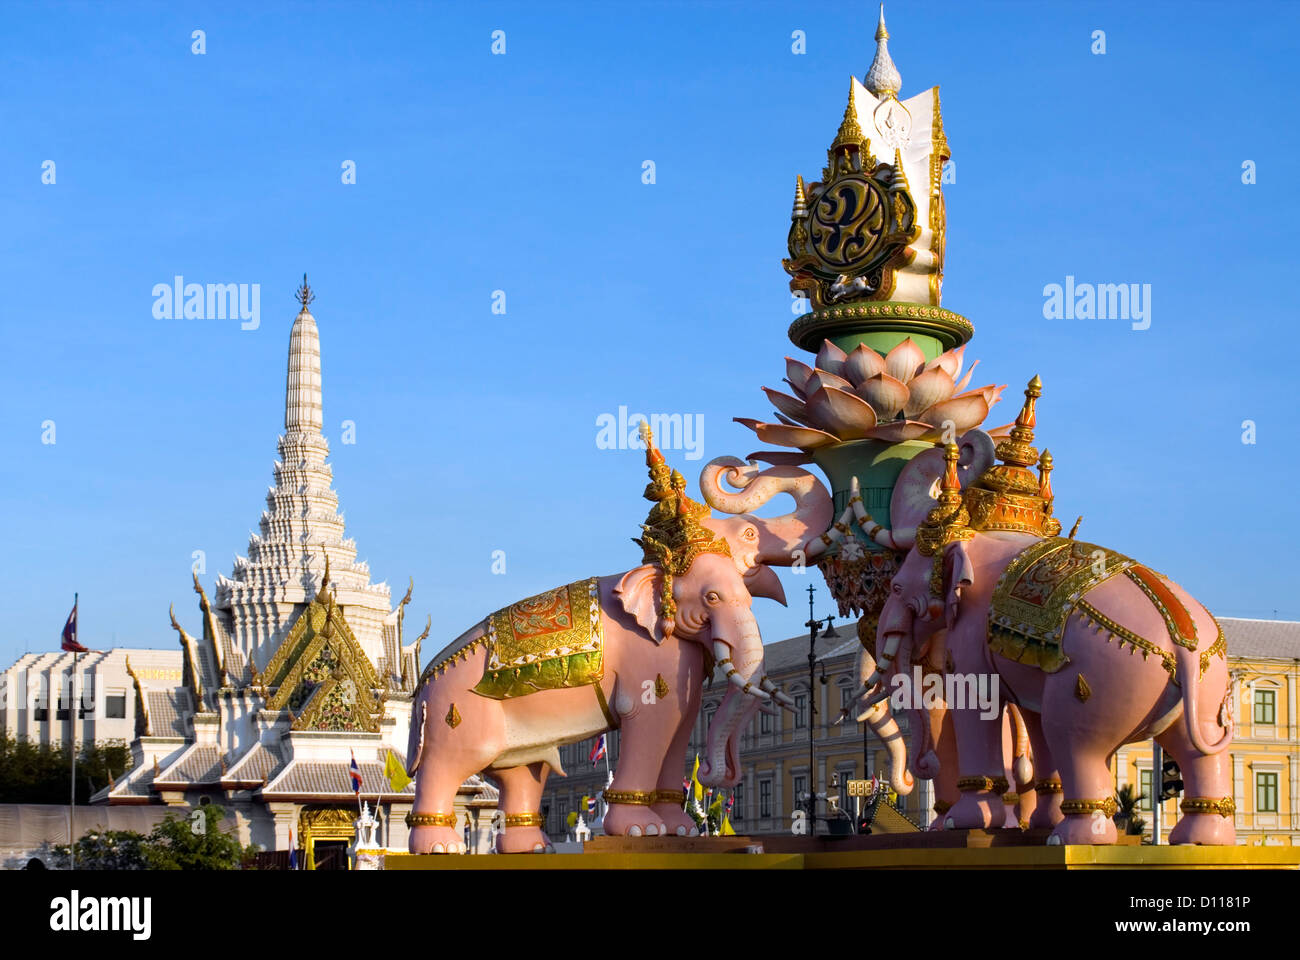 L'éléphant blanc monument affiche pour l'honneur du roi Bhumibol Adulyadej Thaï 84e anniversaire, Bangkok, Thaïlande Banque D'Images